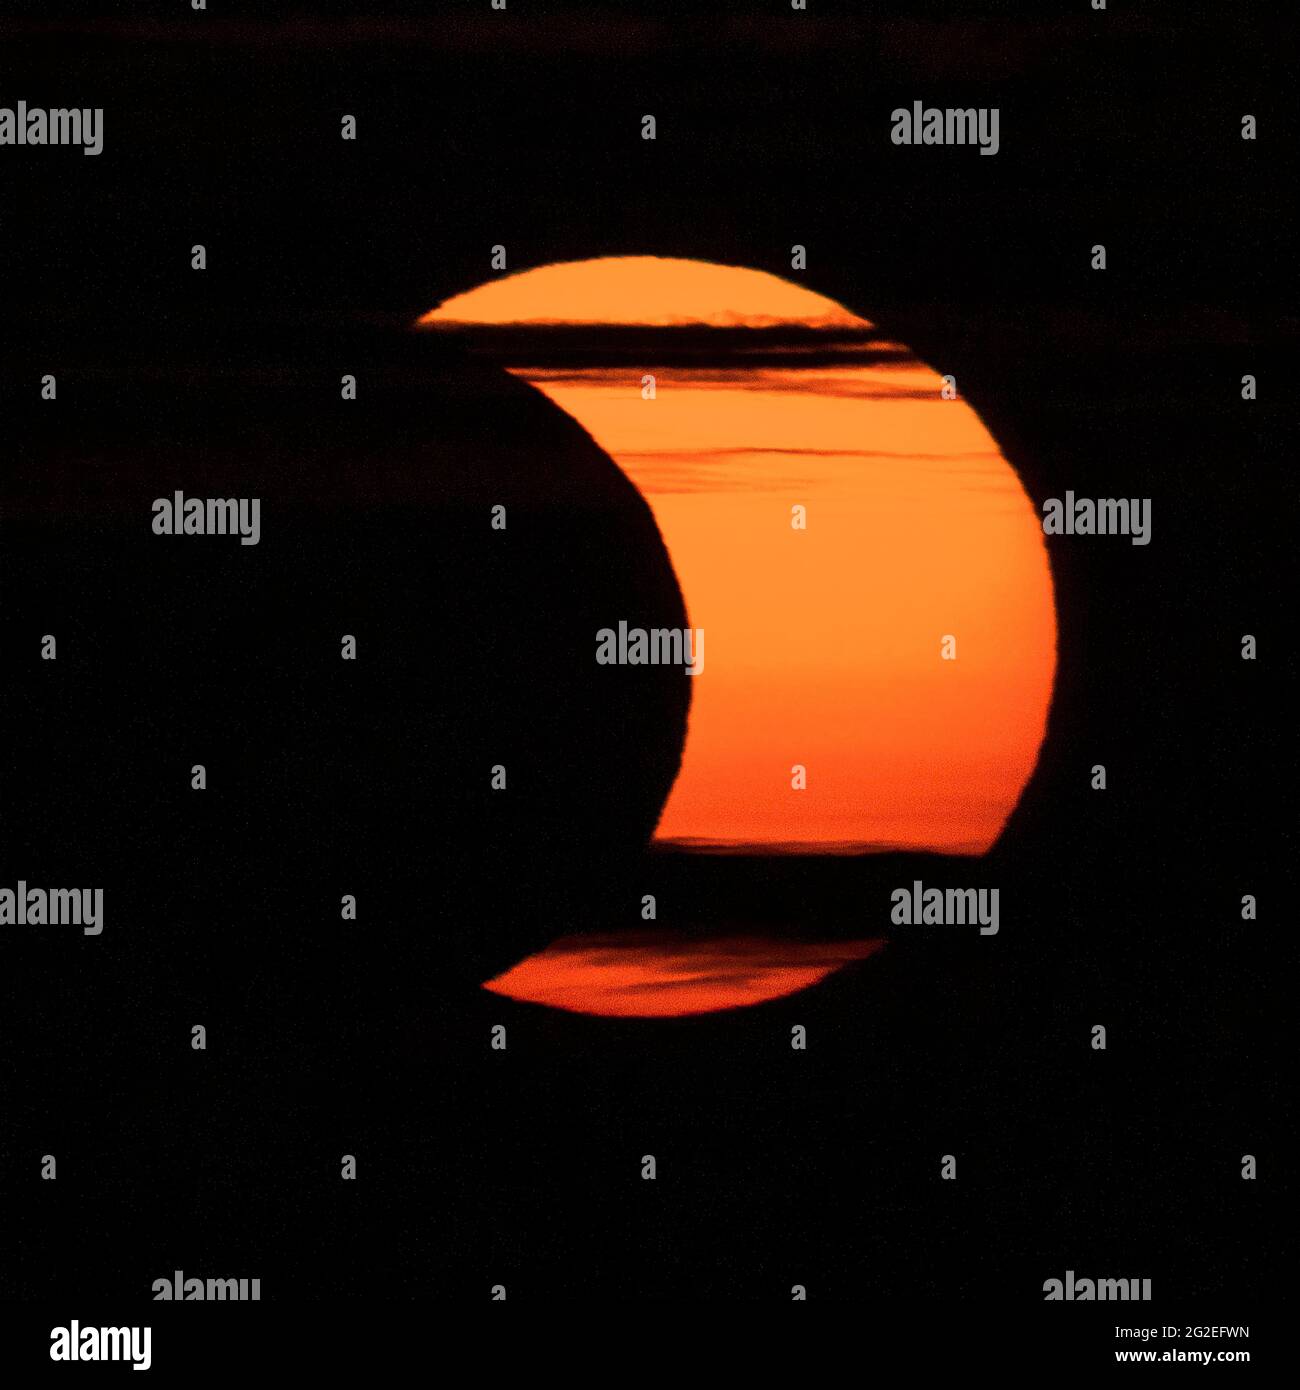 Un'eclissi solare parziale è vista da Arlington, Virginia, giovedì 10 giugno 2021. L'eclissi solare anulare o "anello di fuoco" è visibile solo ad alcune persone in Groenlandia, Russia settentrionale e Canada. Credito fotografico: (NASA/Bill Ingalls) Foto Stock